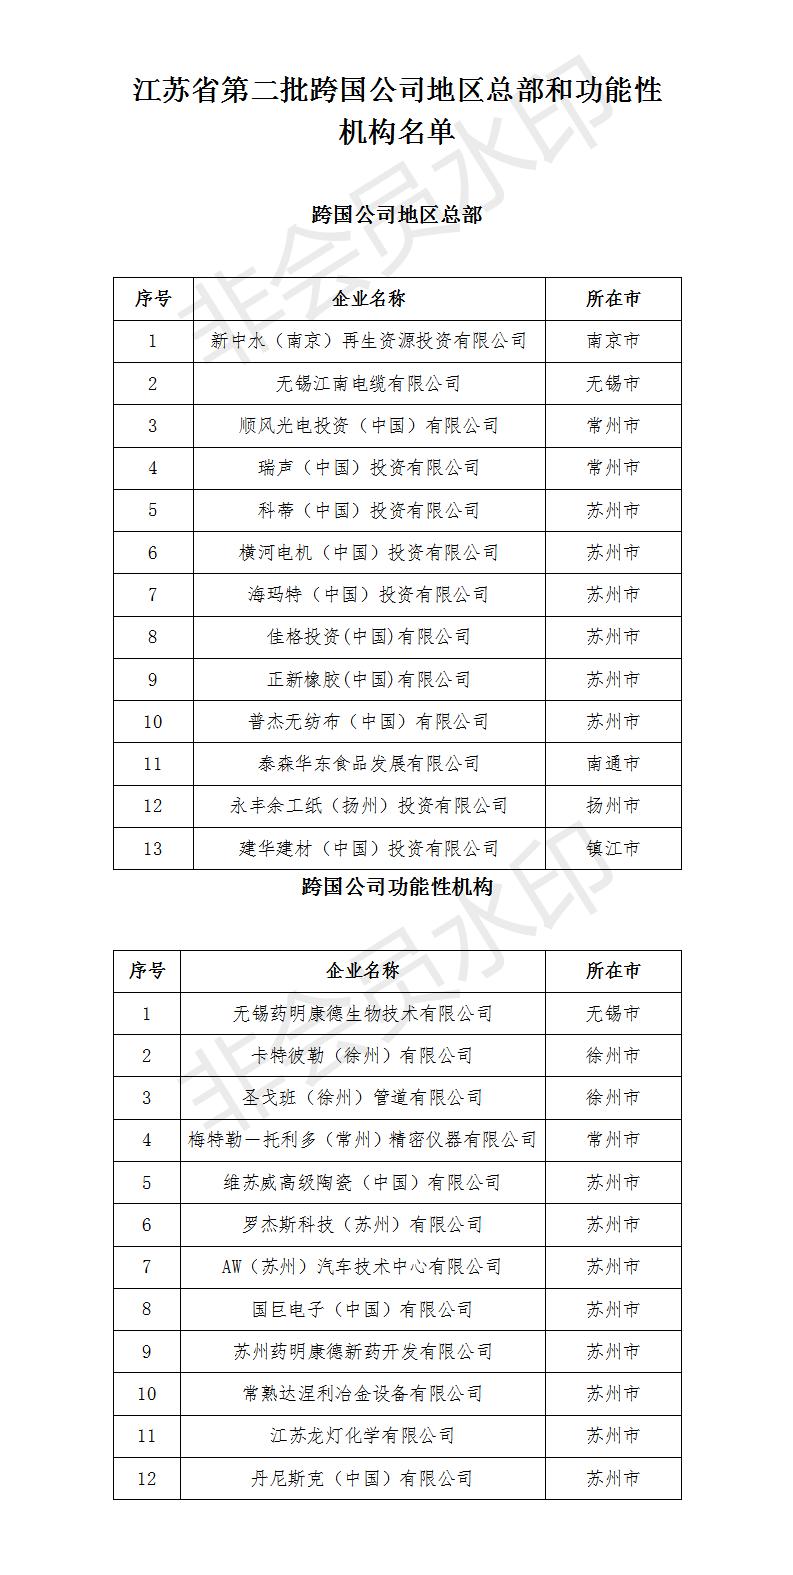 江苏省第二批跨国公司地区总部和功能性机构认定名单